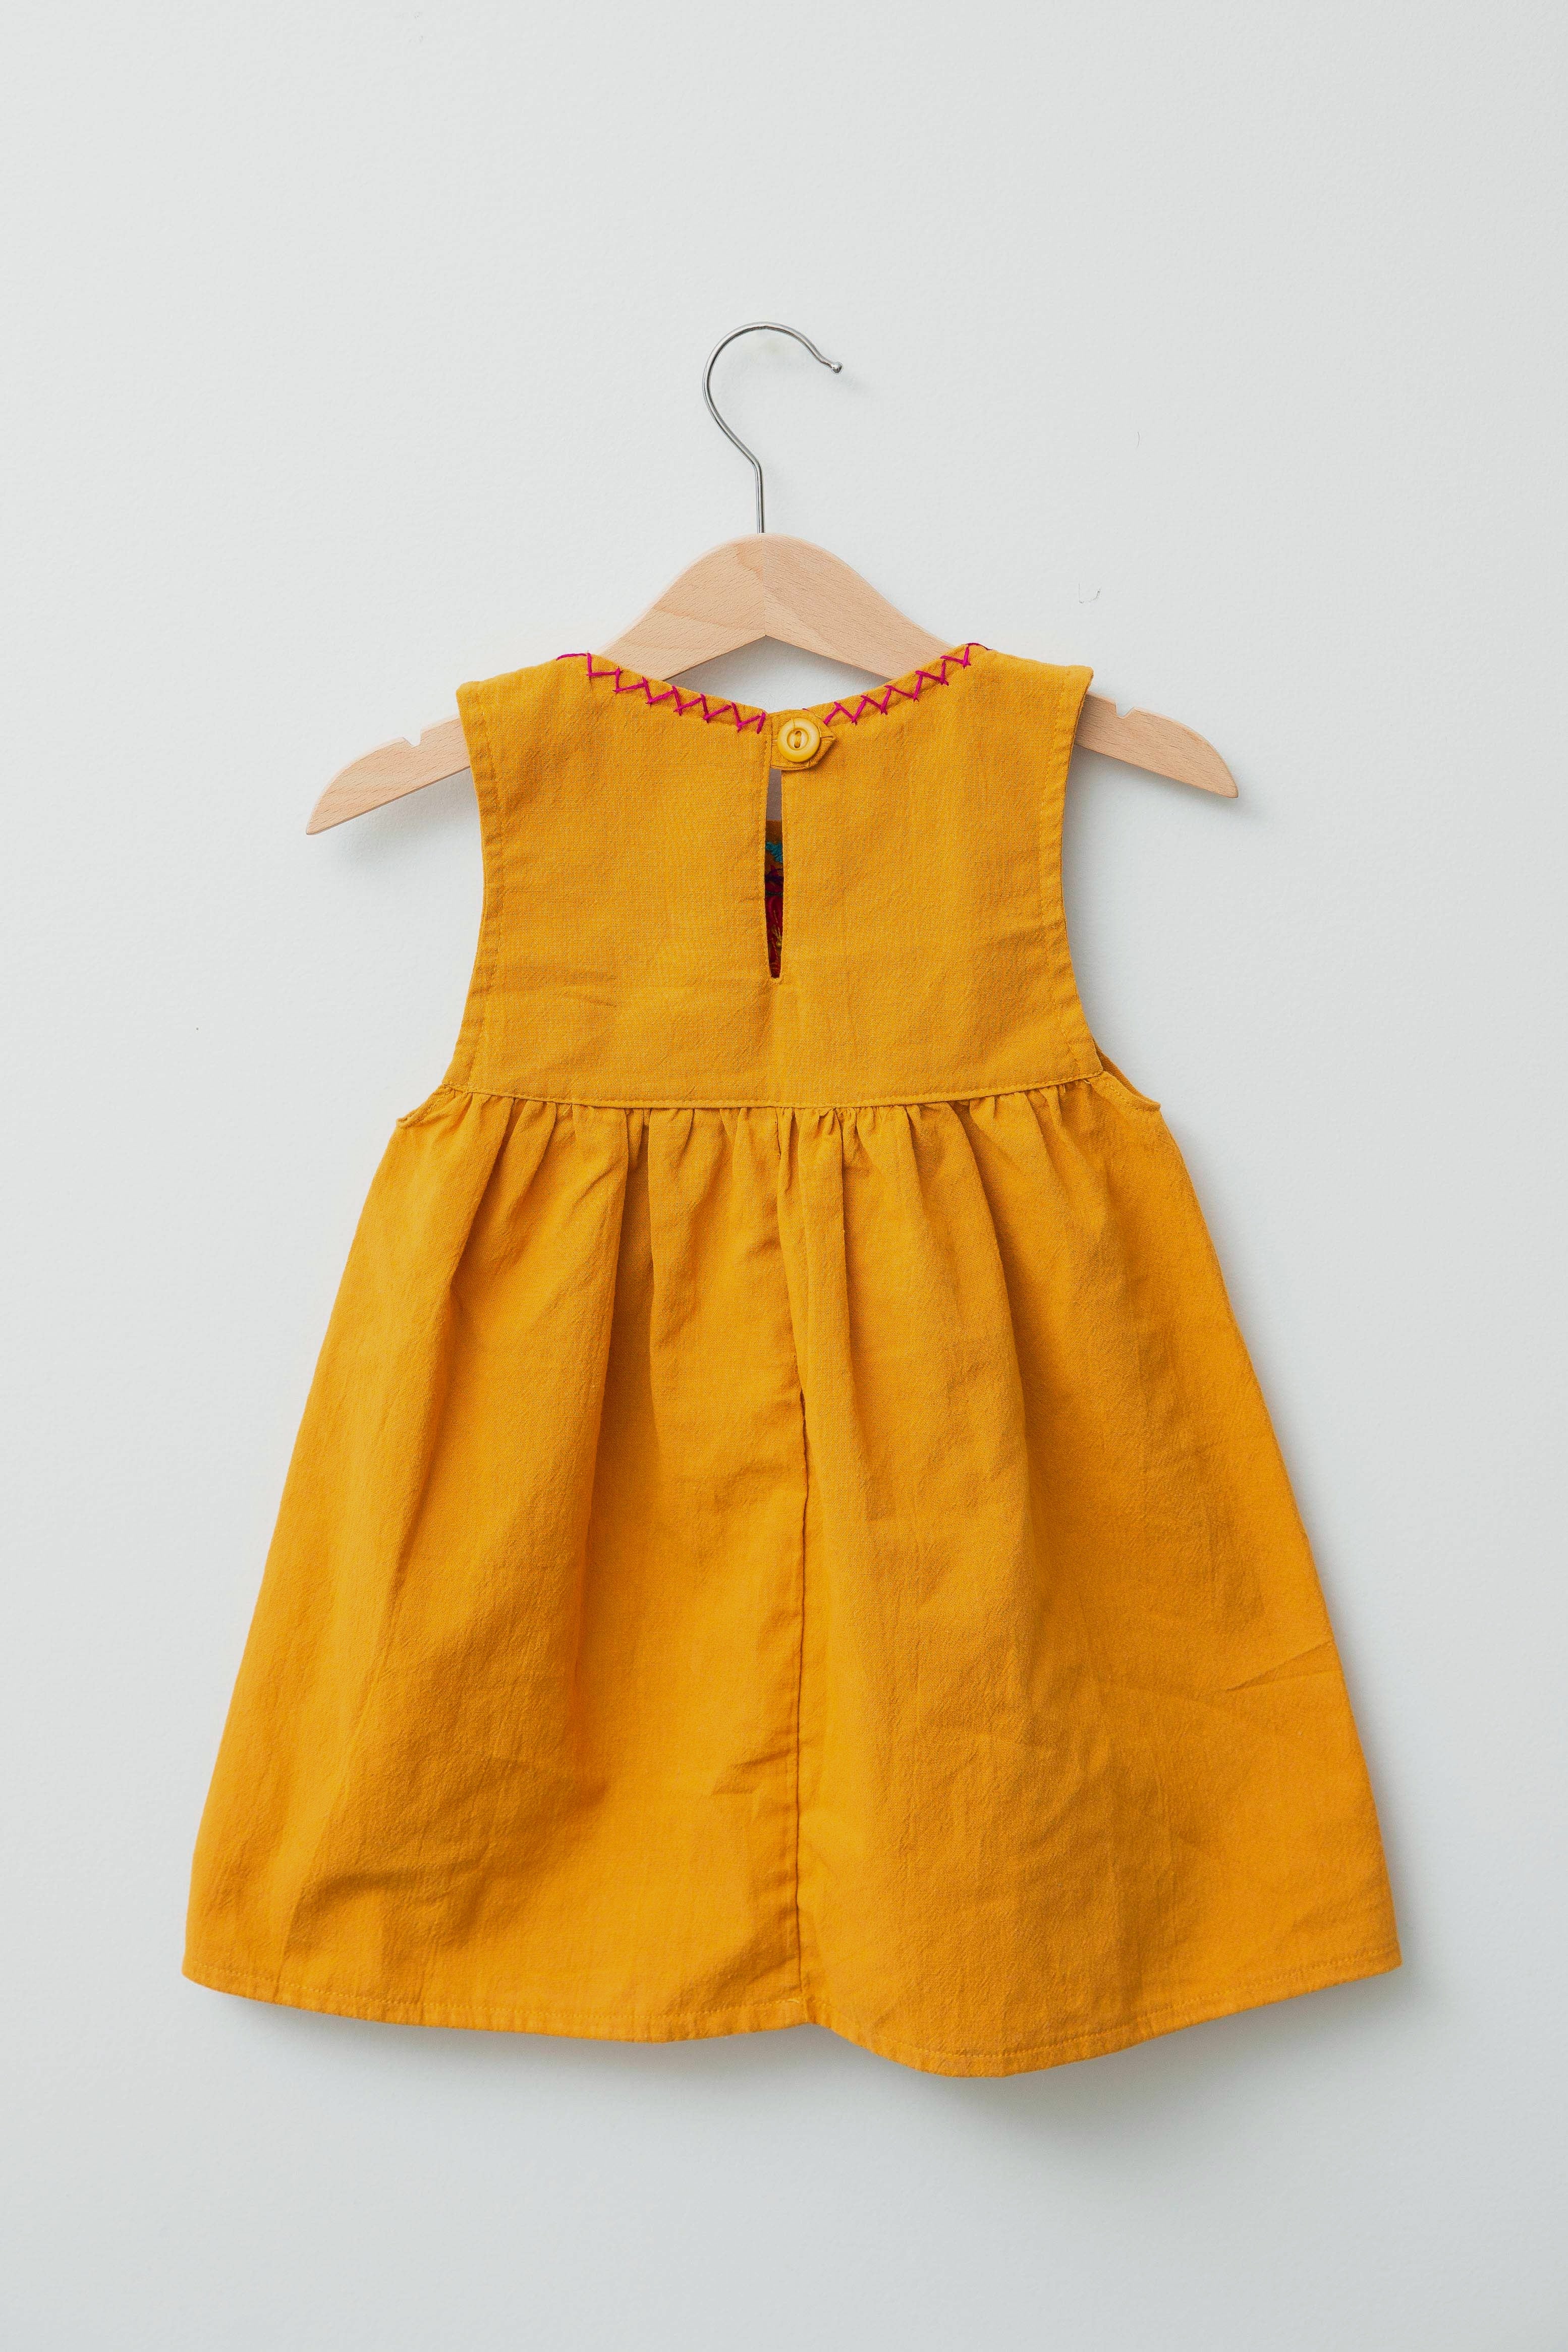 Reverse of kids sleeveless dark yellow sun dress, showing dark yellow button closure at neck.